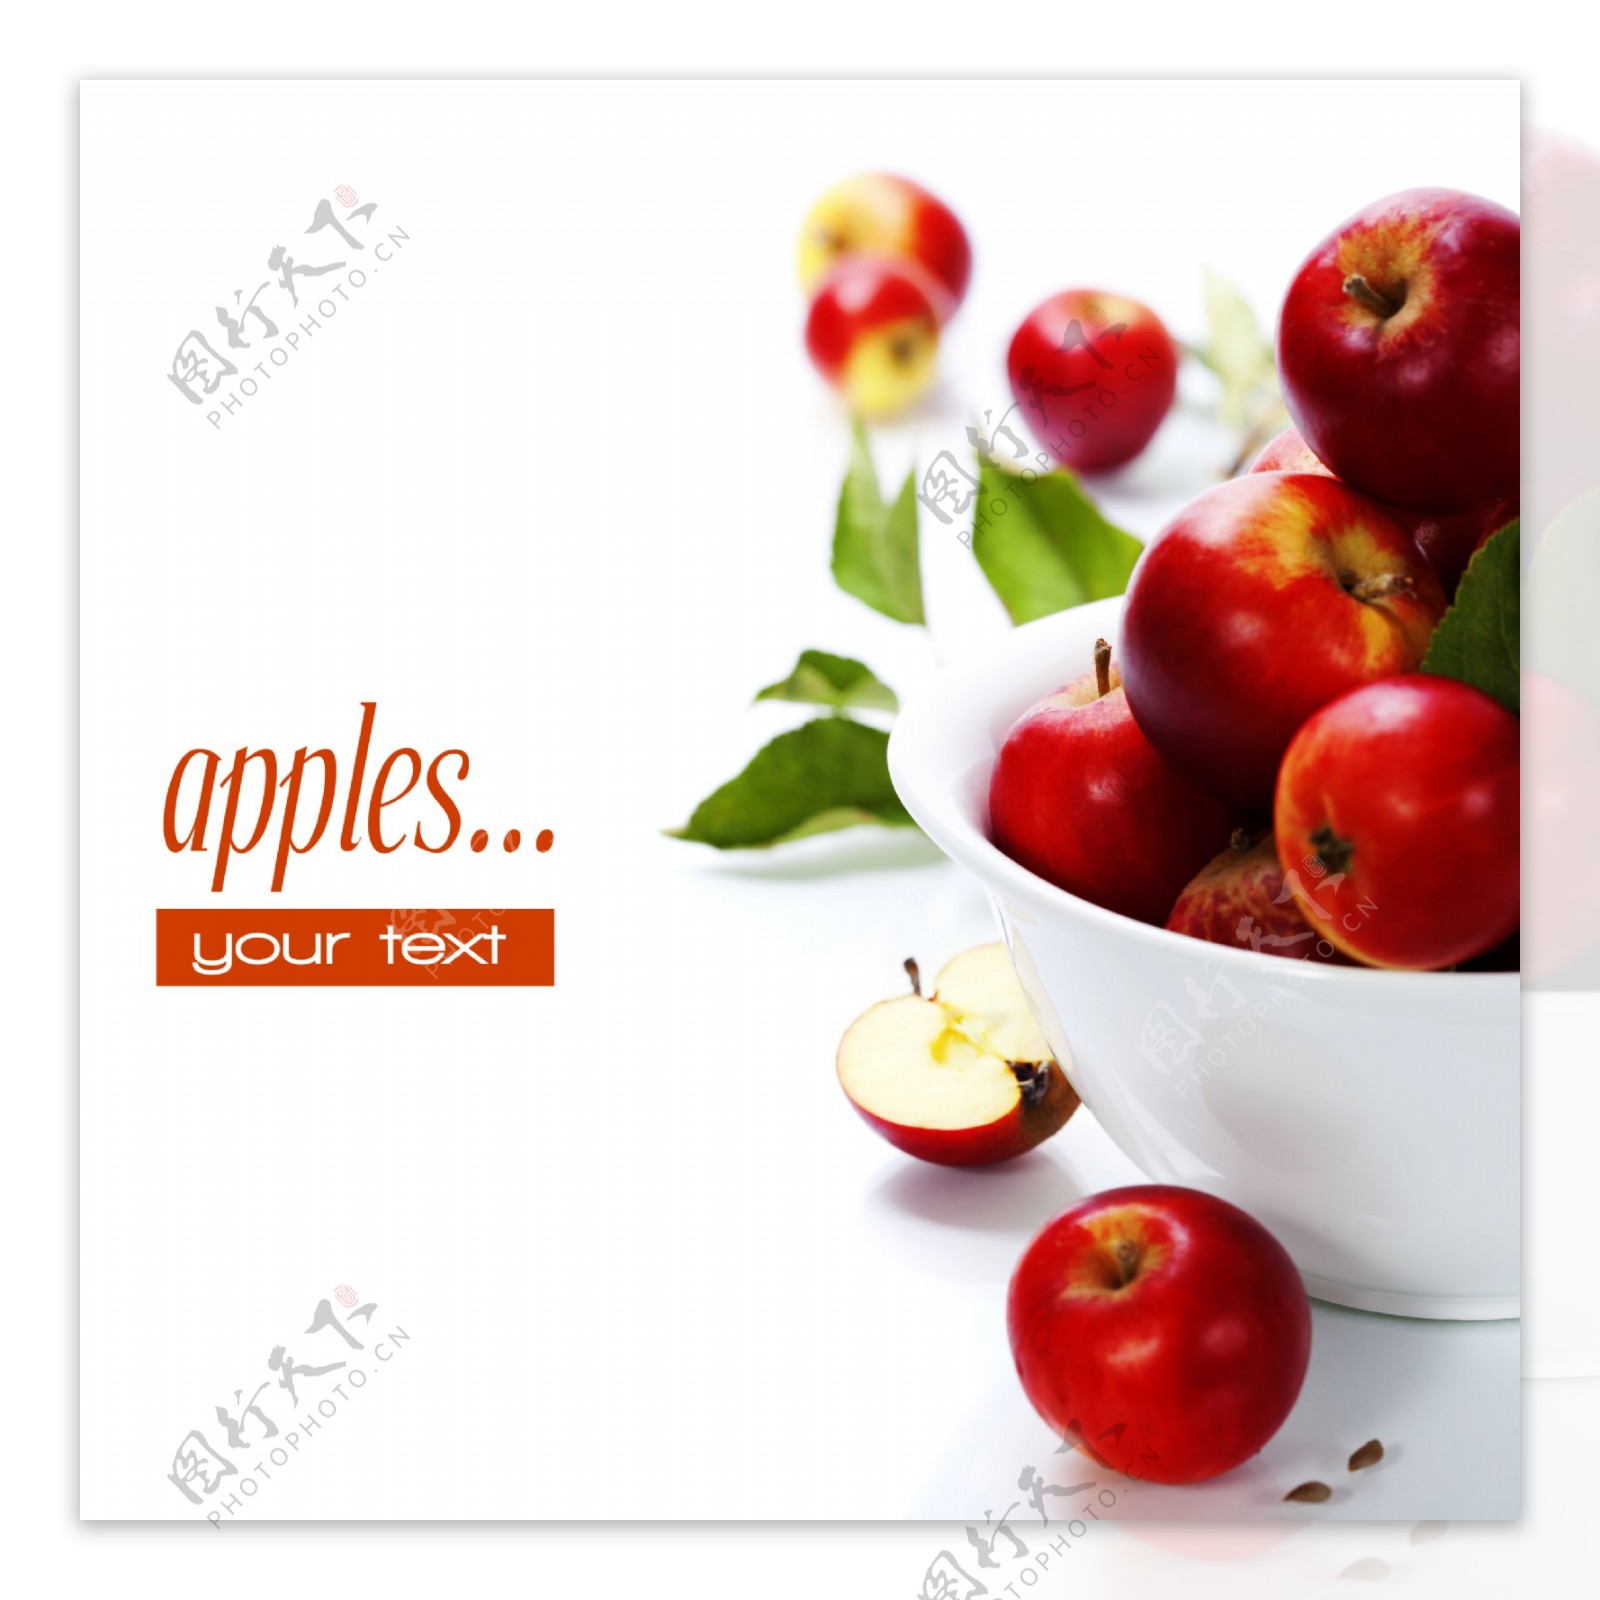 苹果碗图象 库存例证. 插画 包括有 回报, 黄色, 附庸风雅, 自然的, 艺术, 范围, 果子, 图形式 - 3519476